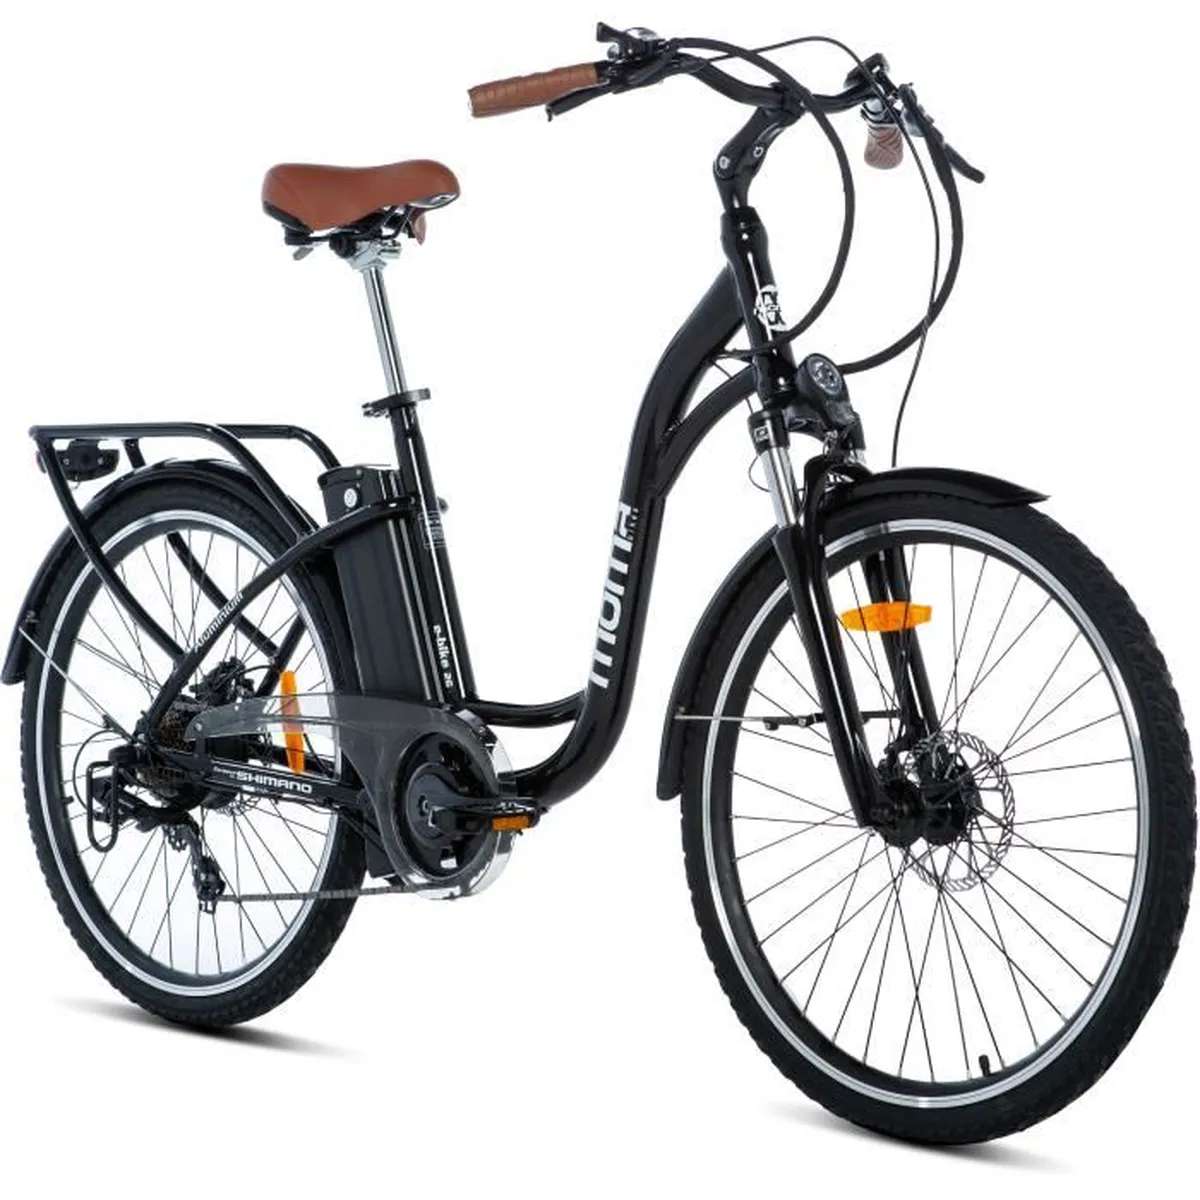 Cdiscount : - 50 % sur le vélo électrique Moma Bikes disponible à